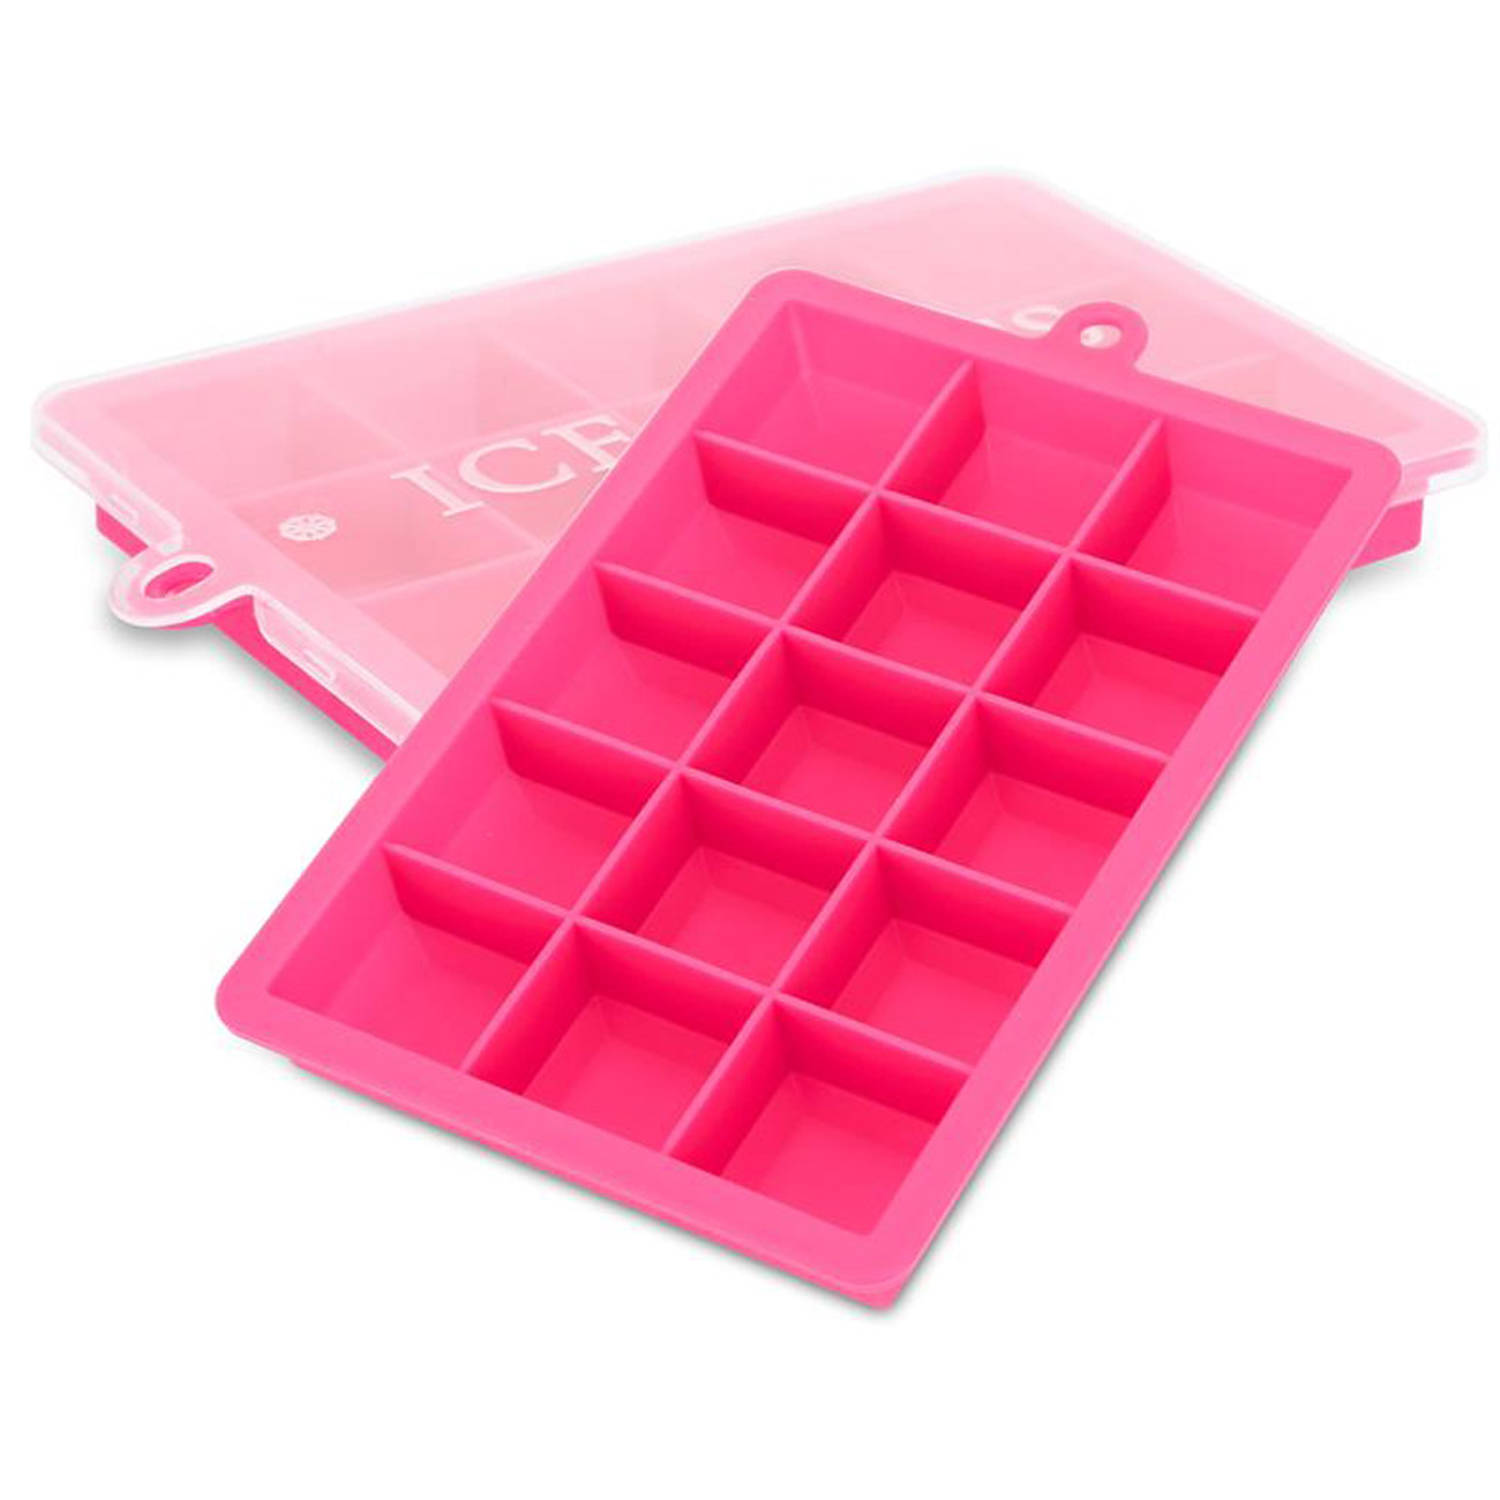 INTIRILIFE 2 x ijsblokjesvormen in roze, set van 2 à 15 vakken, siliconen vormen met deksel, flexibele ijsblokjeshouder, afsluitbaar voor ijs, babyvoeding en meer